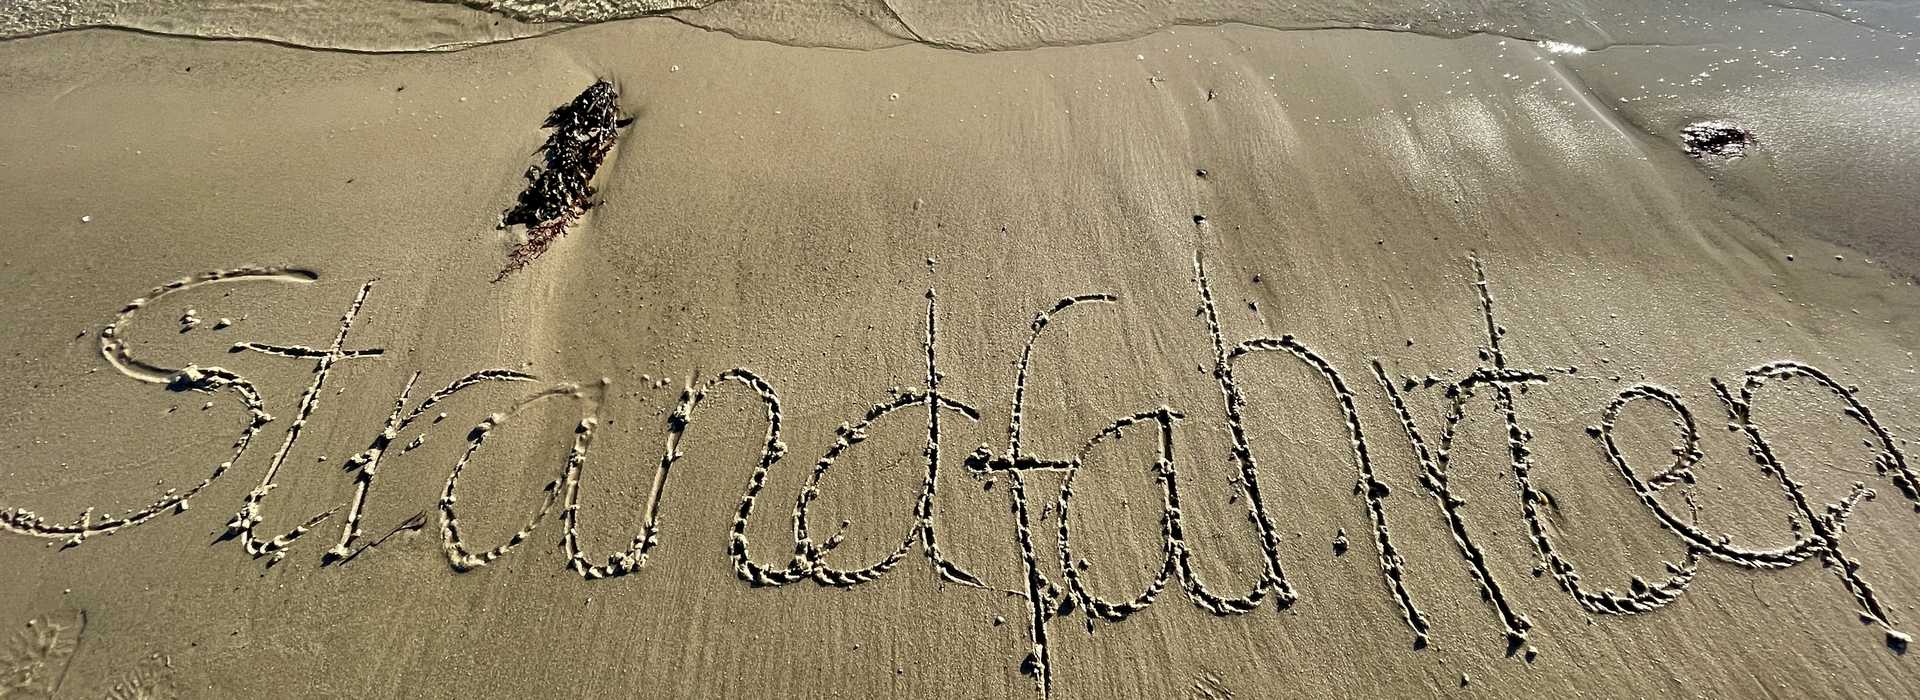 Strandfahrten: Das Bild zeigt einen in den Sand gemahlten Schriftzug "Strandfahrten"